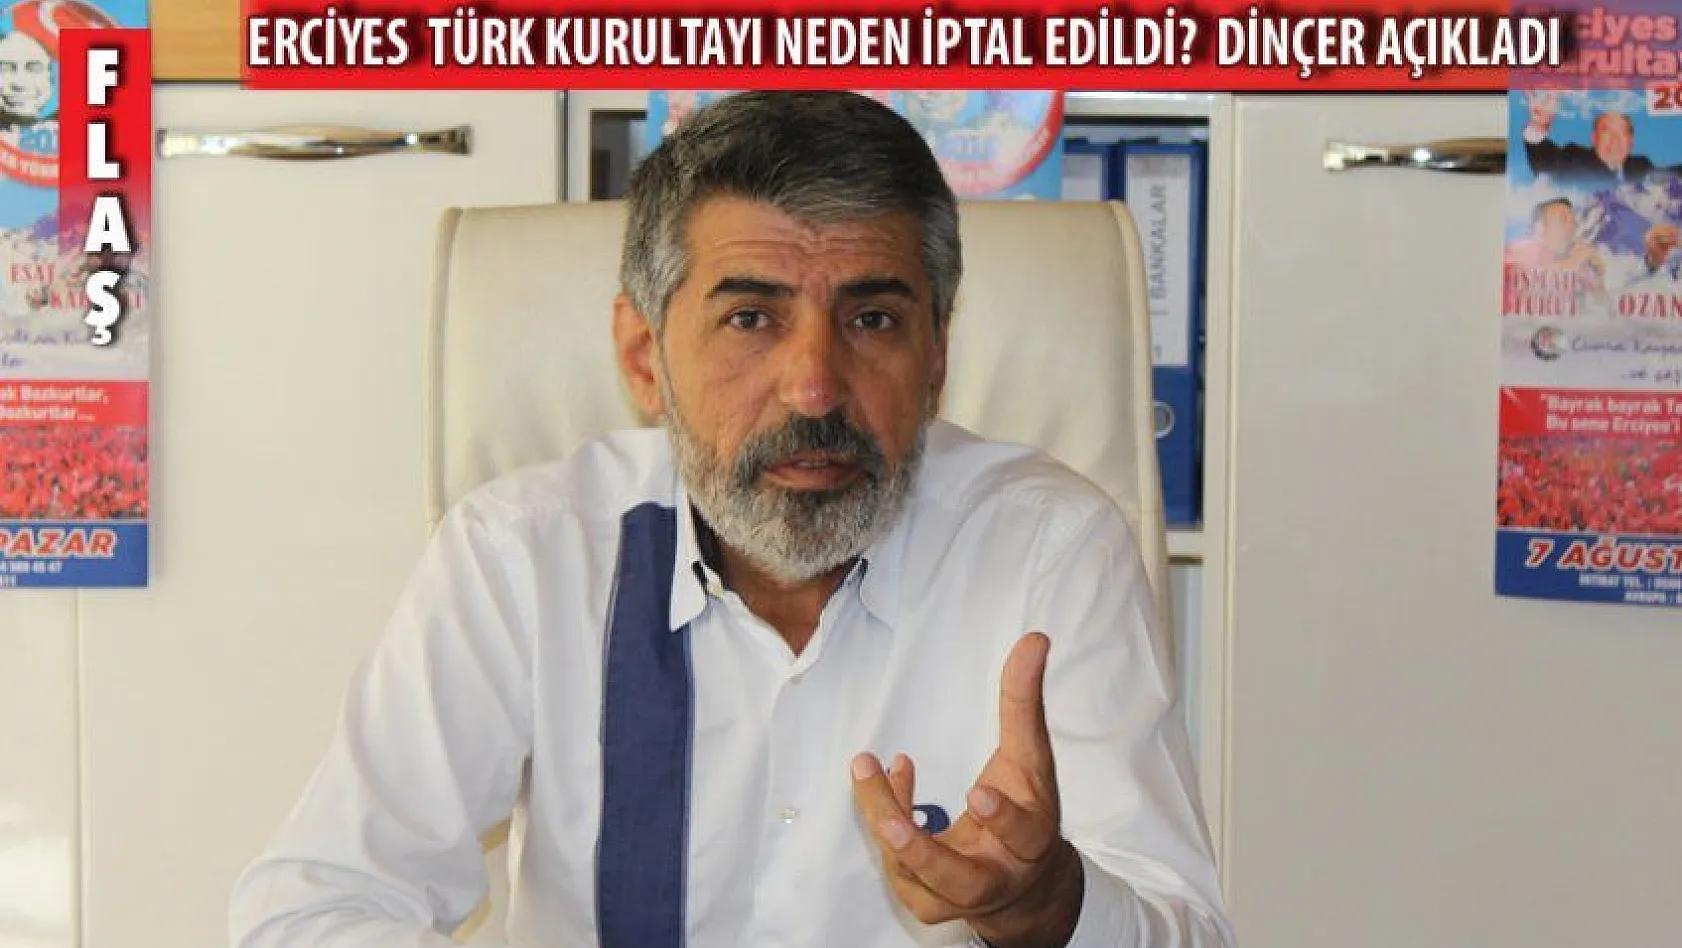 Erciyes Türk Kurultayı OHAL nedeniyle iptal edildi